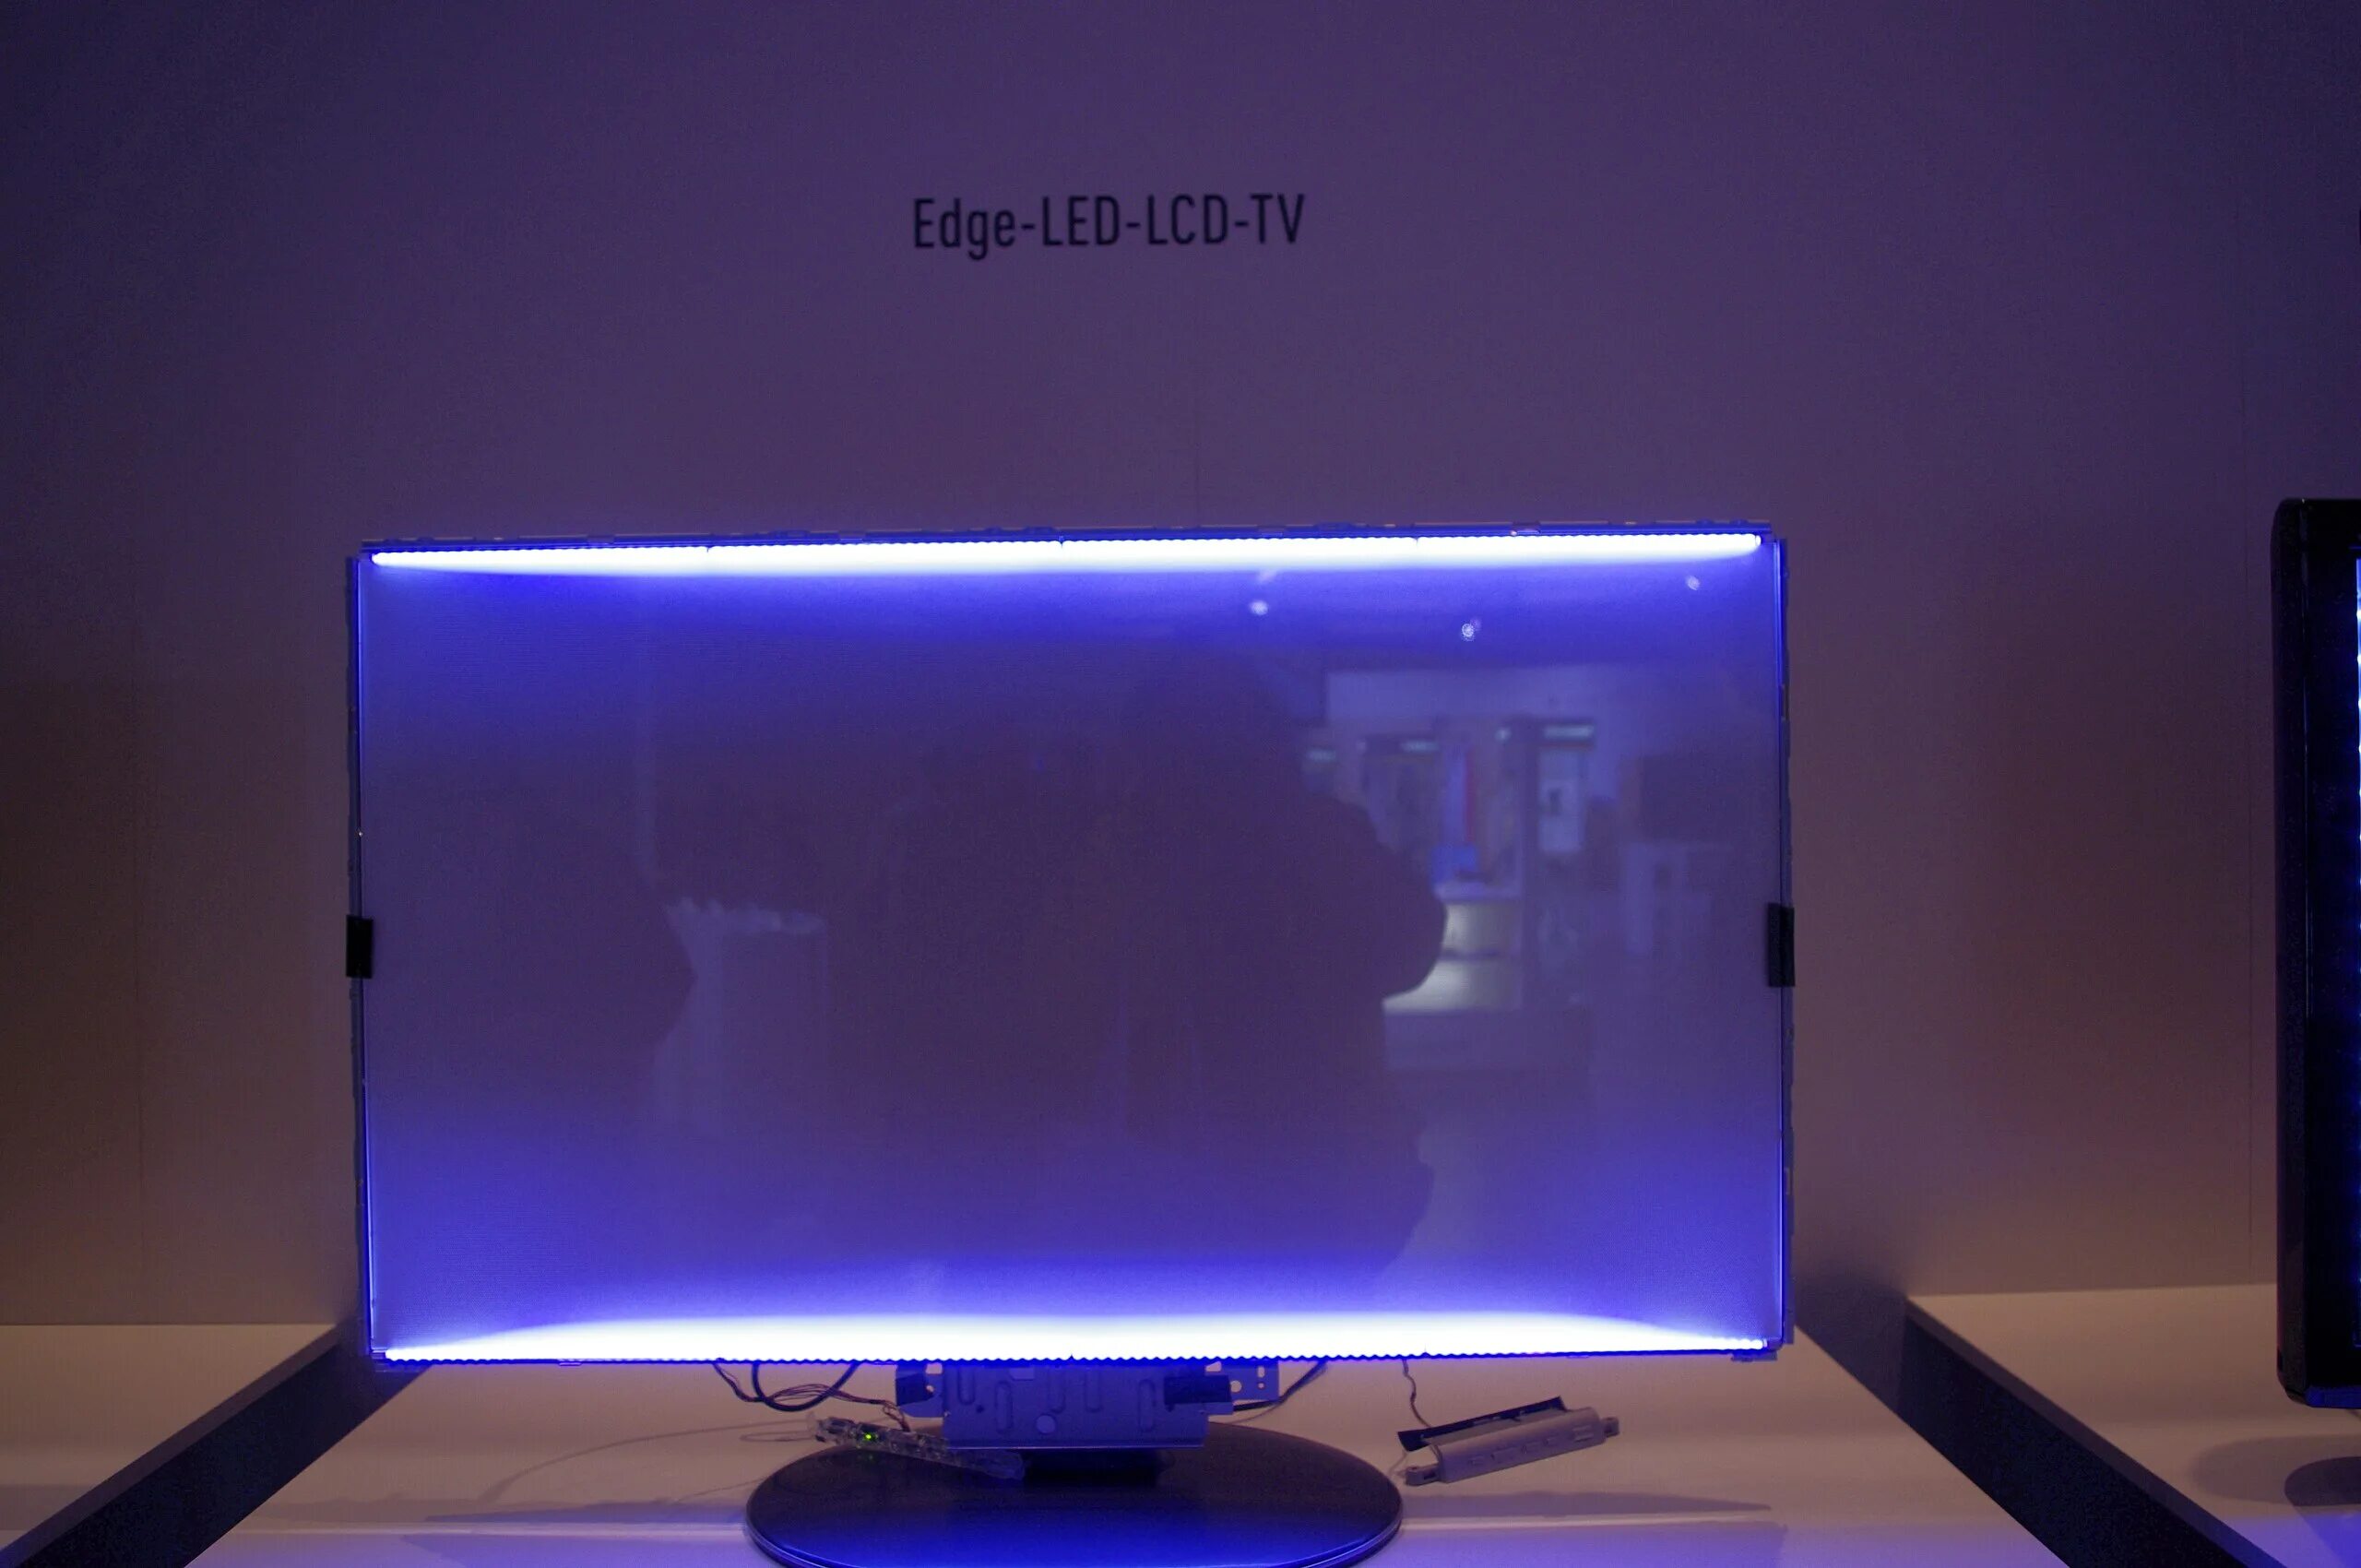 Экран светится белым. Edge led подсветка Samsung. Подсветка Edge led что это такое в телевизоре. Тип светодиодной подсветки: Edge led. Подсветка direct led что это такое в телевизоре.